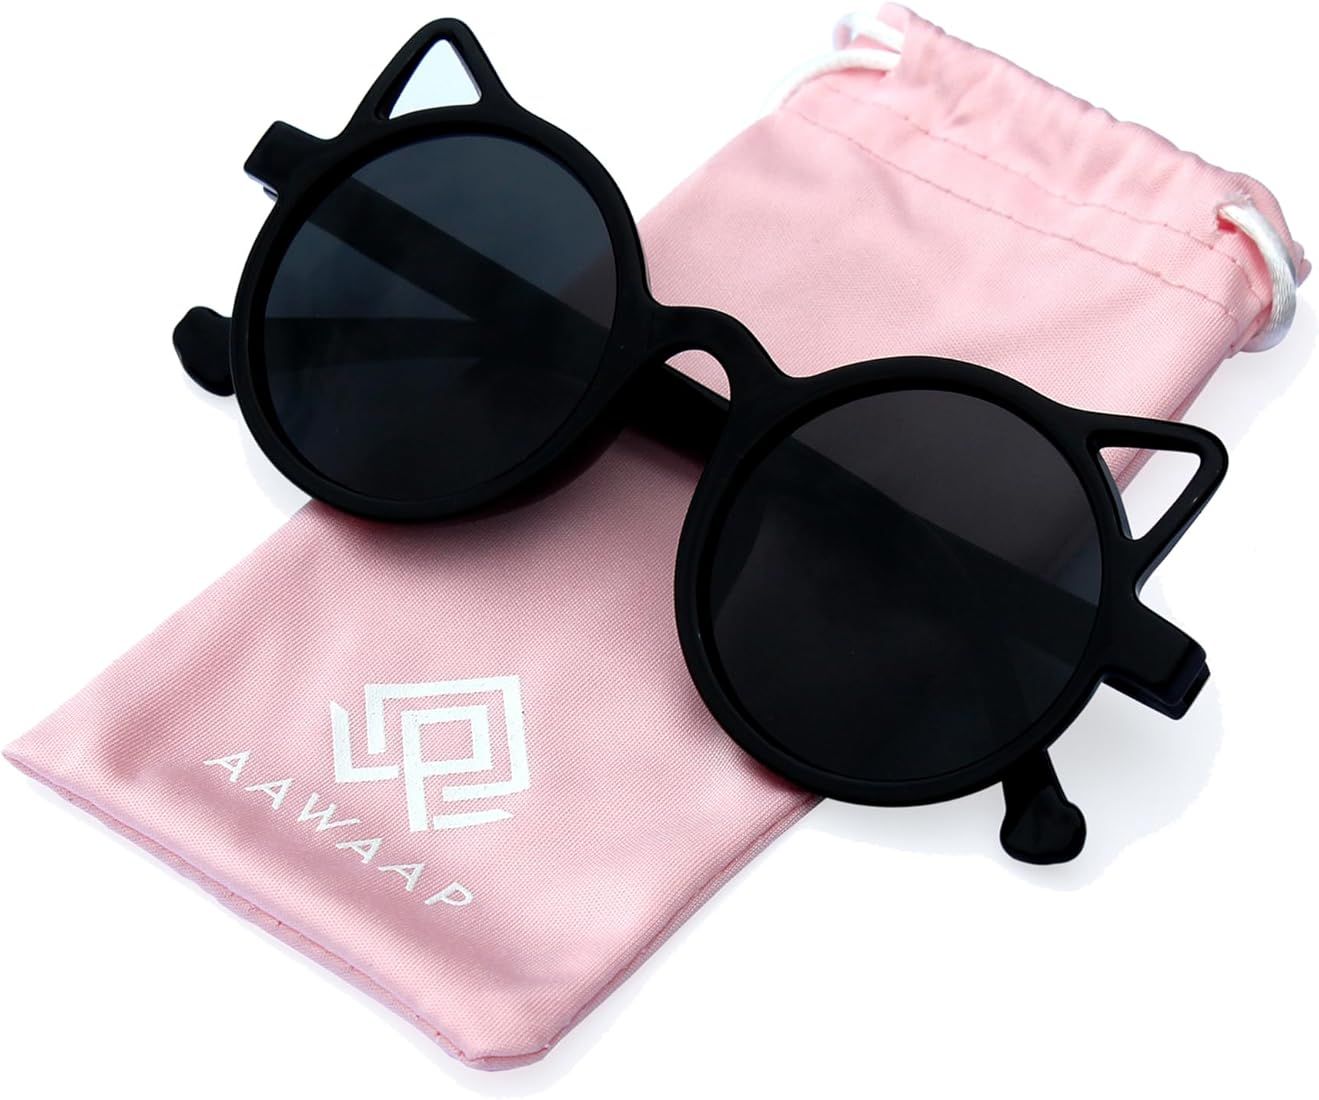 Kids Sunglasses Polarized UV Protection Round Shaped Cat Ears Toddler Sunglasses Age 2-10 Baby Gi... | Amazon (US)